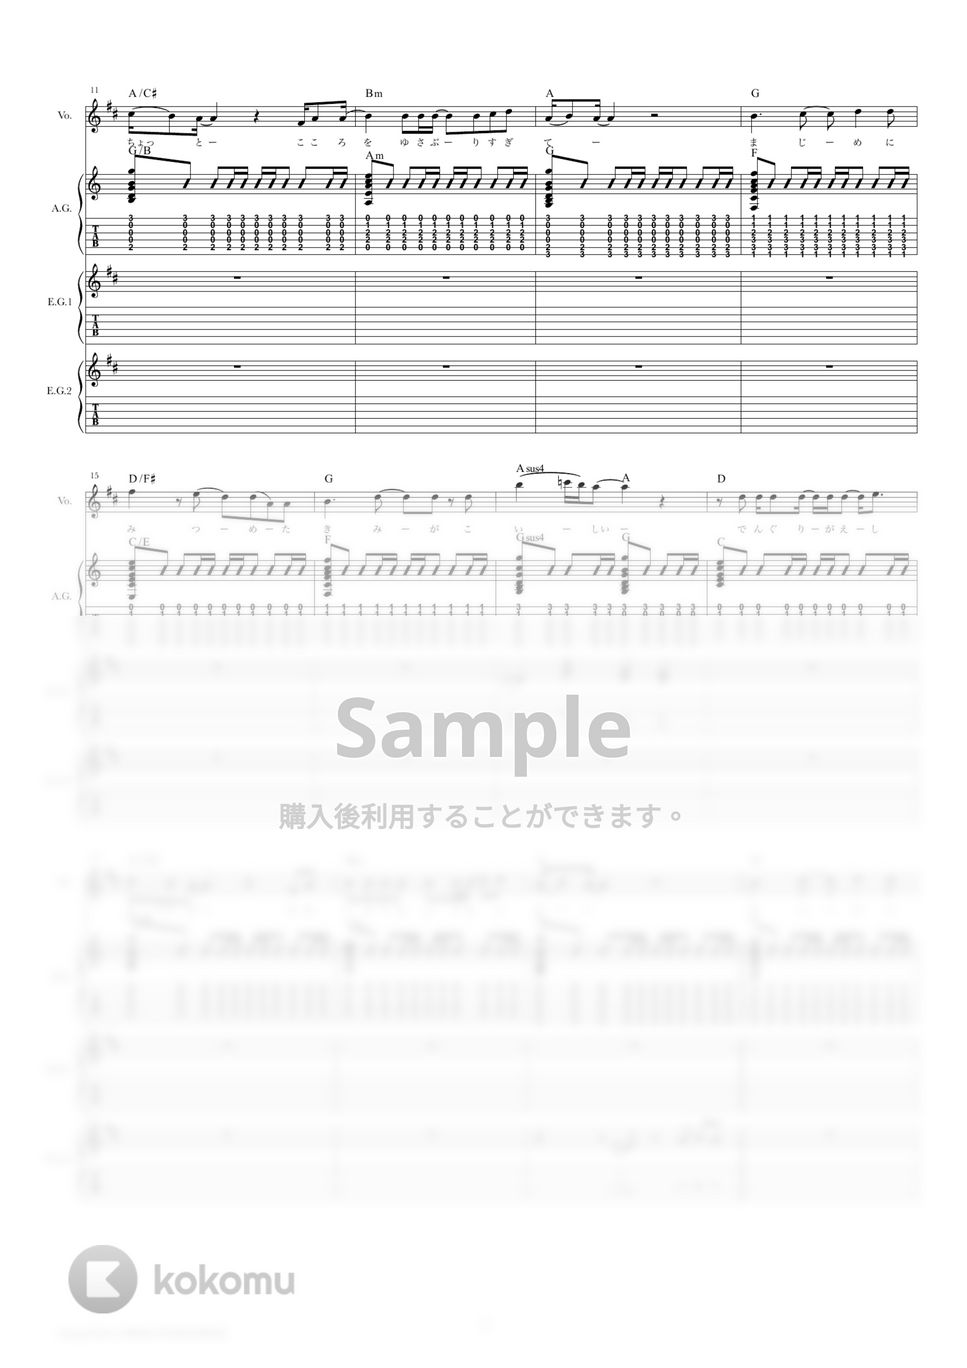 あいみょん - マリーゴールド (ギタースコア・歌詞・コード付き) by TRIAD GUITAR SCHOOL